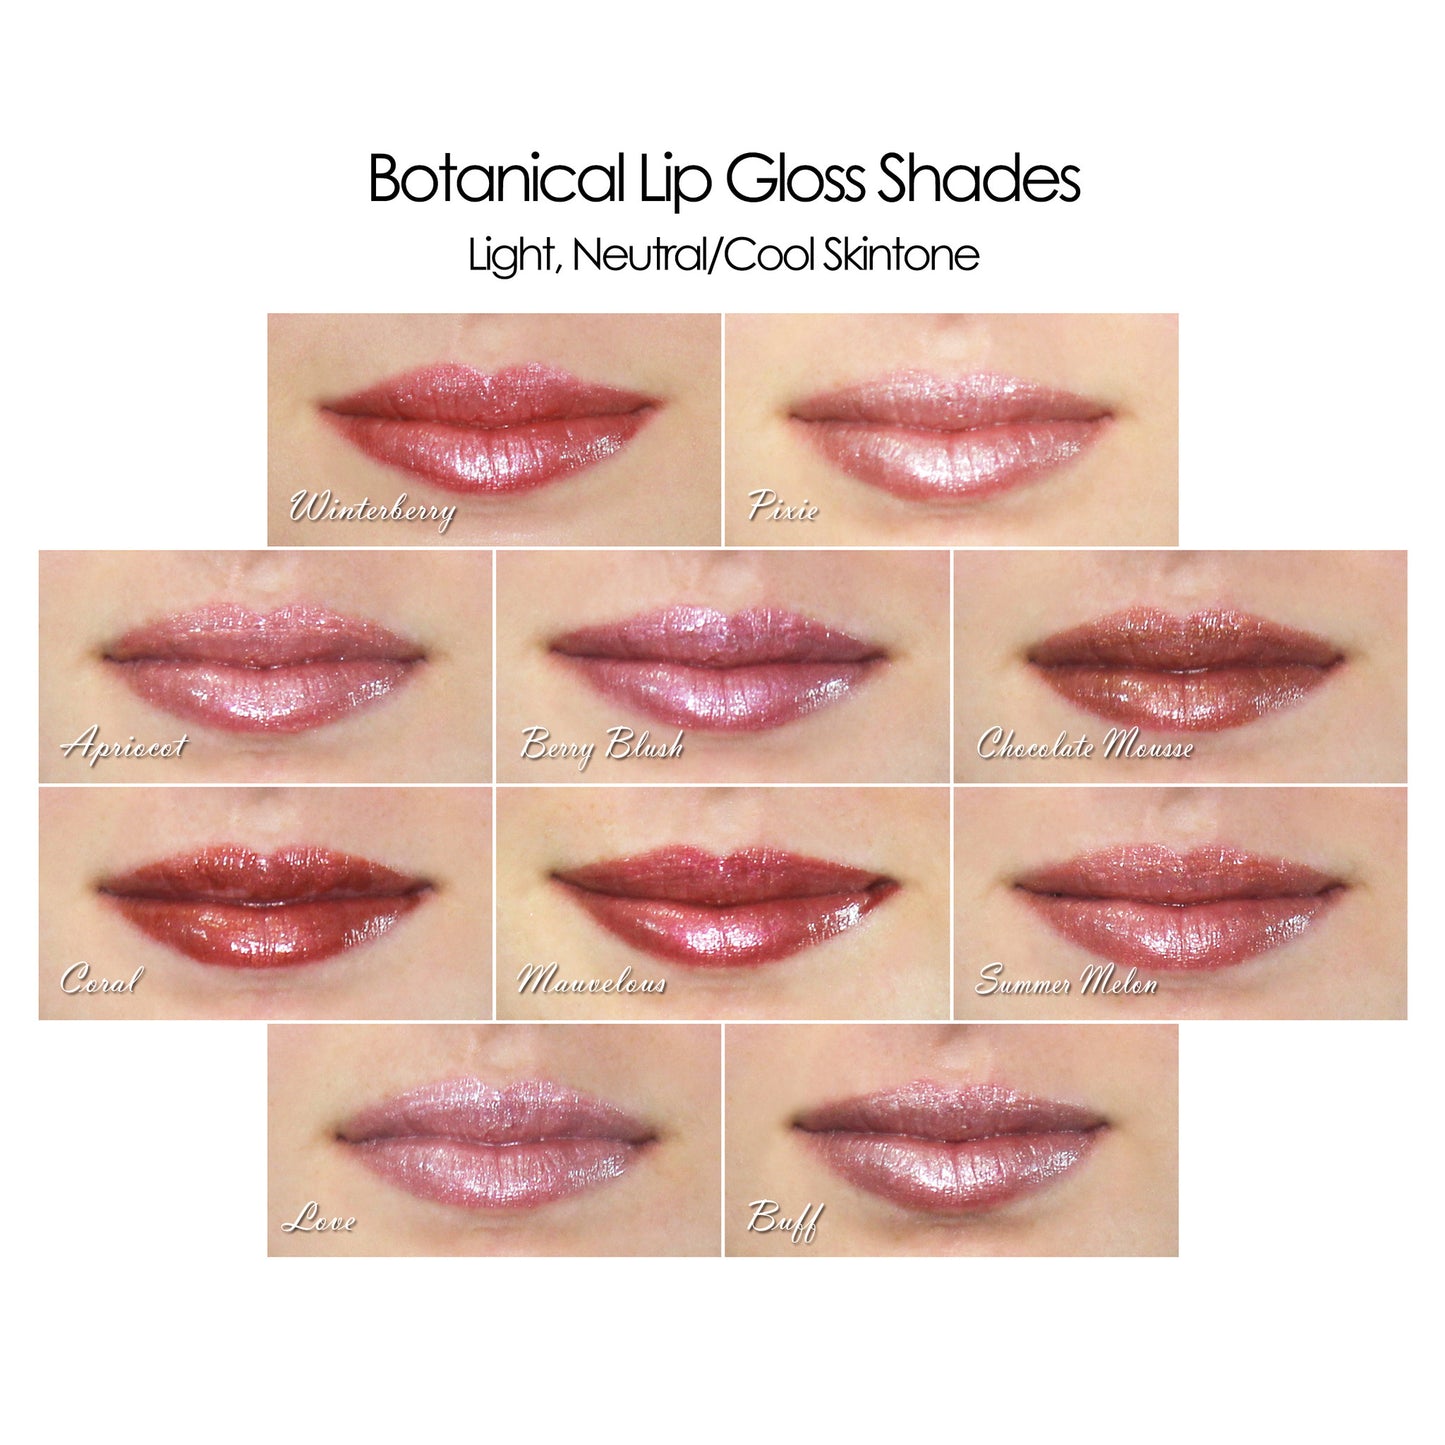 Botanical Lip Gloss